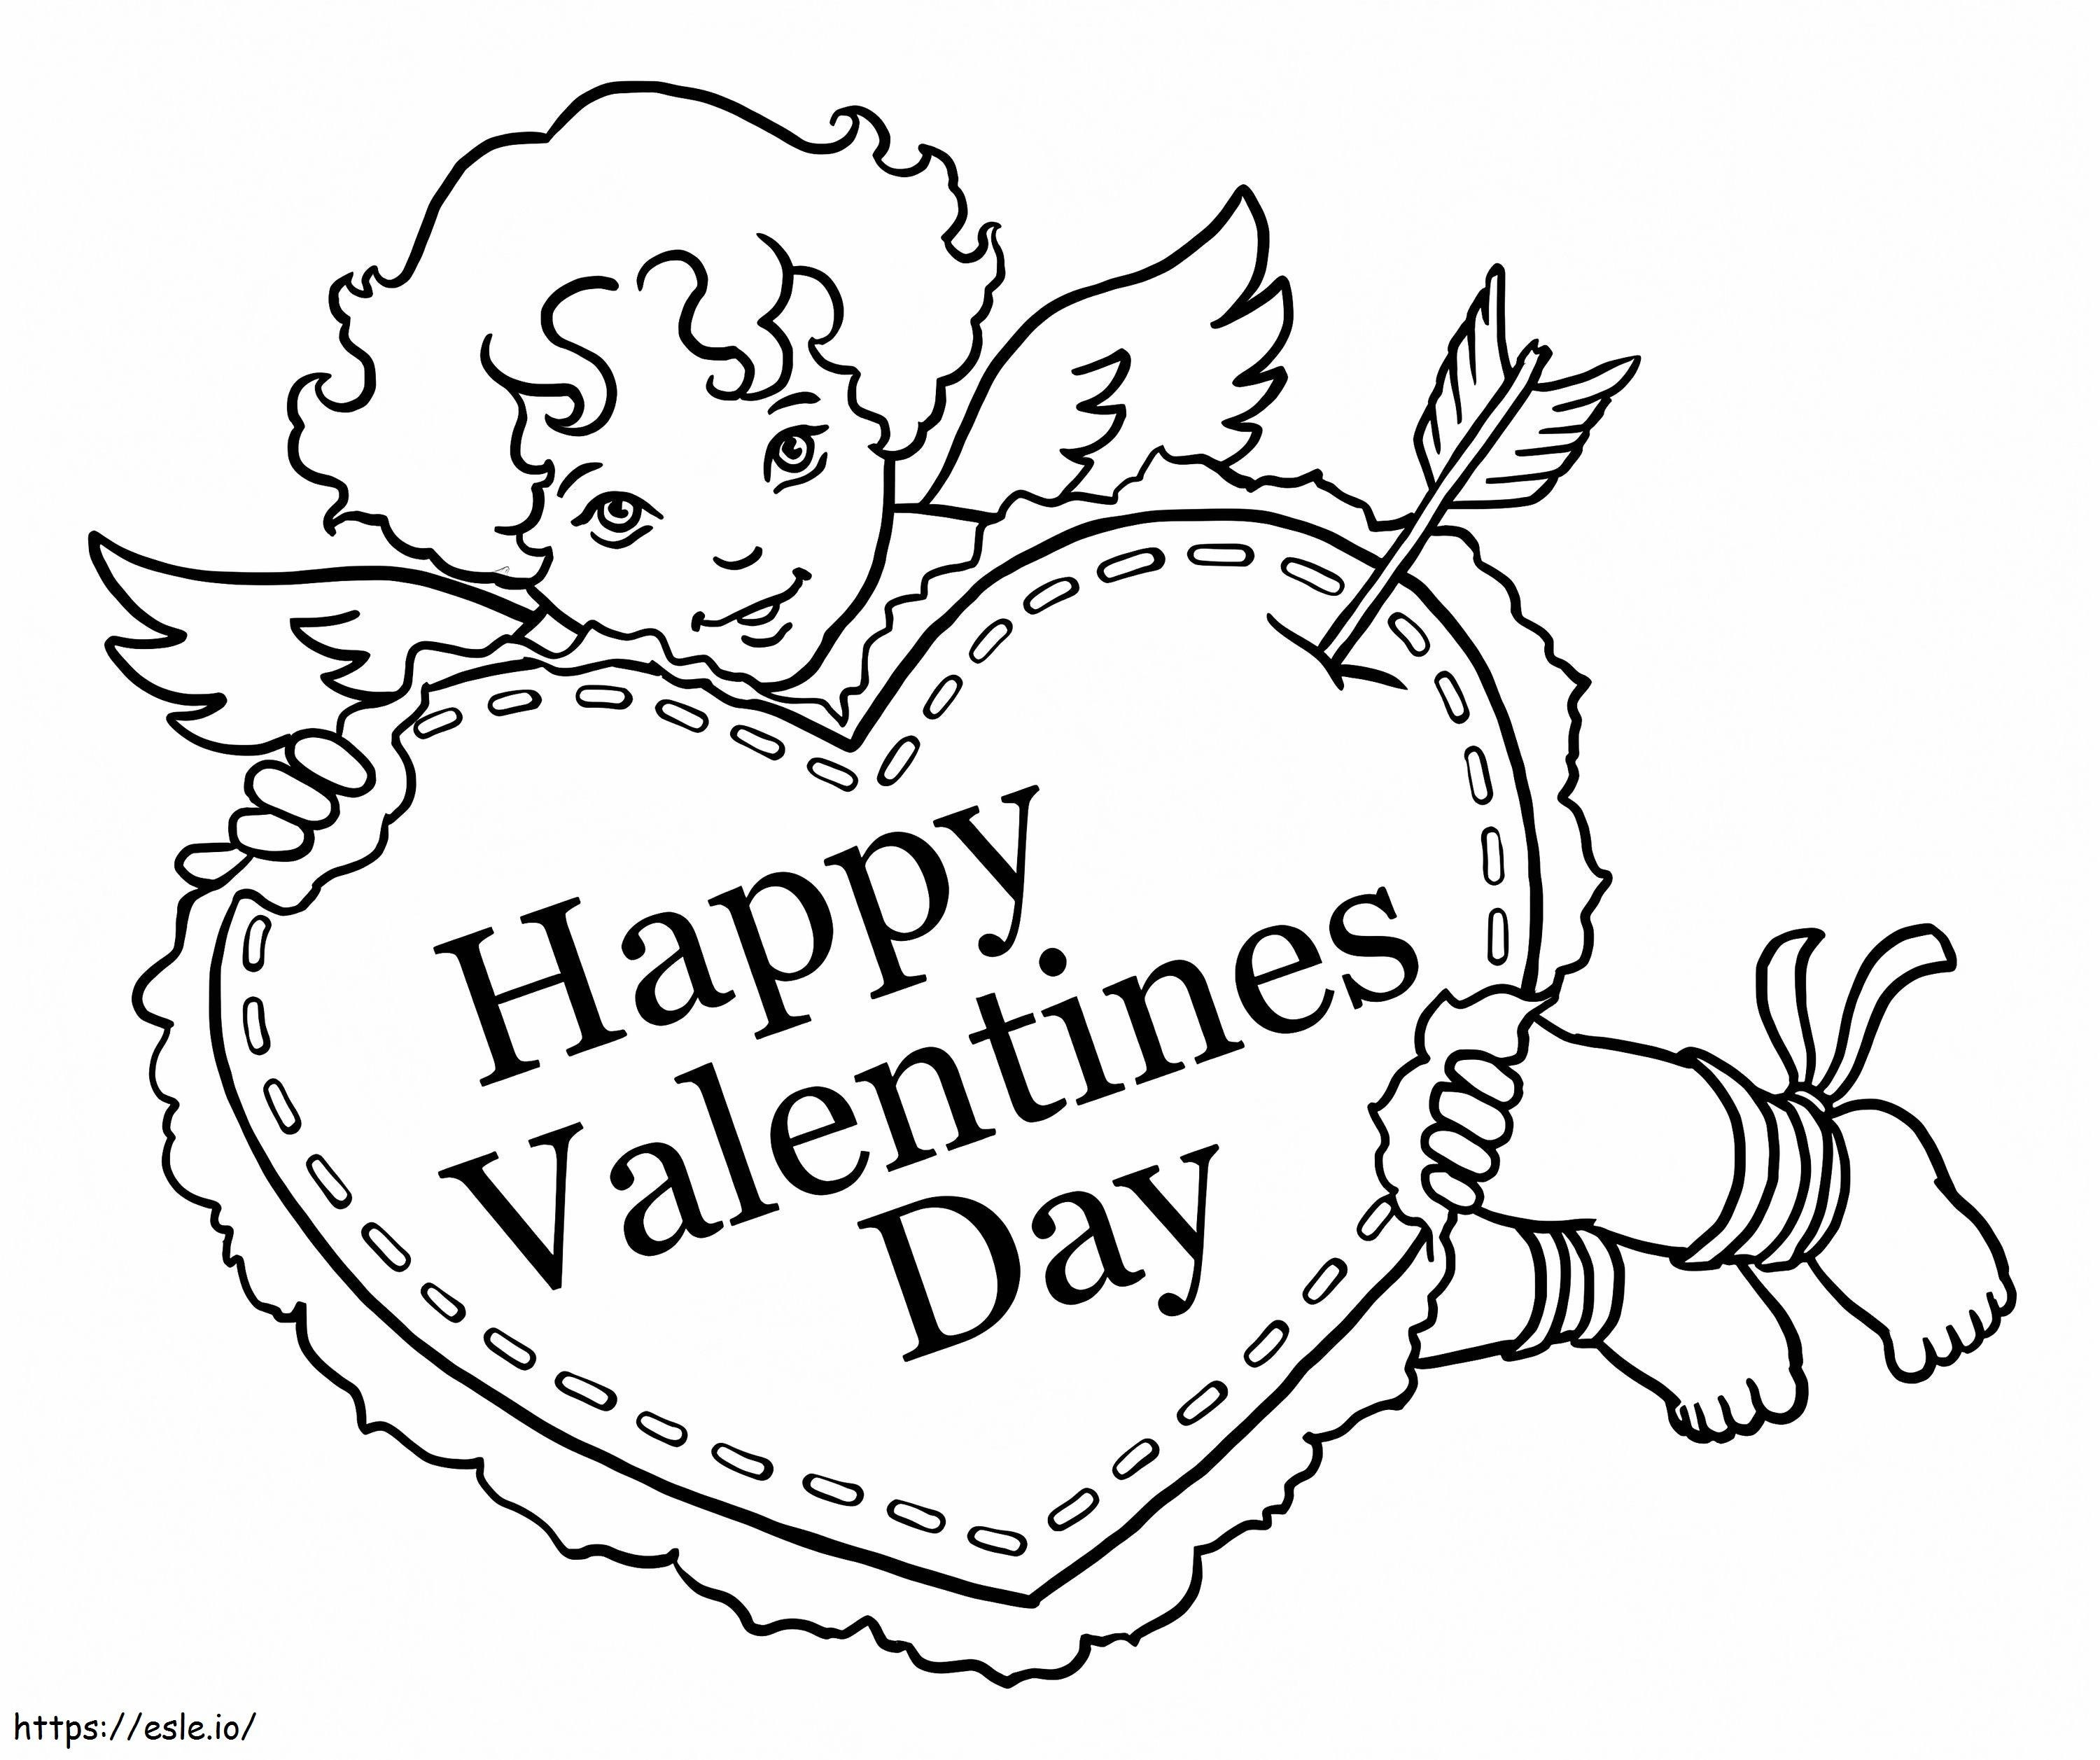 Coloriage Cupidon avec coeur de Saint-Valentin à imprimer dessin